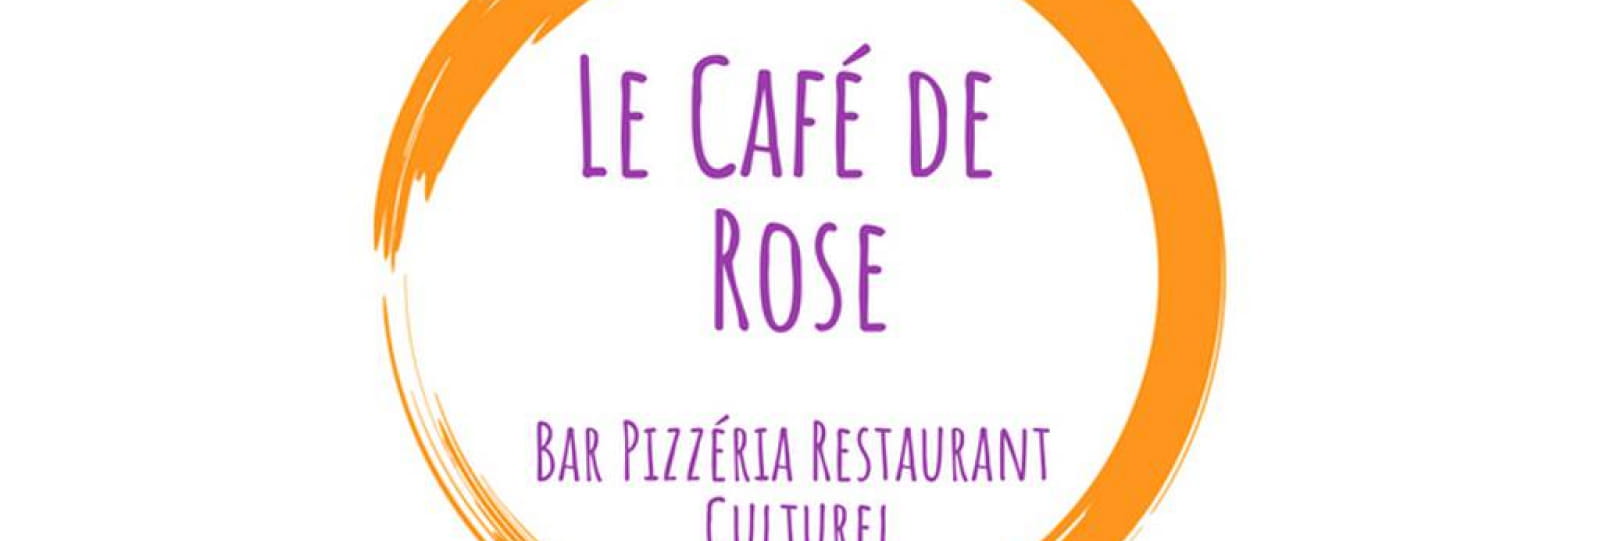 Le café de Rose